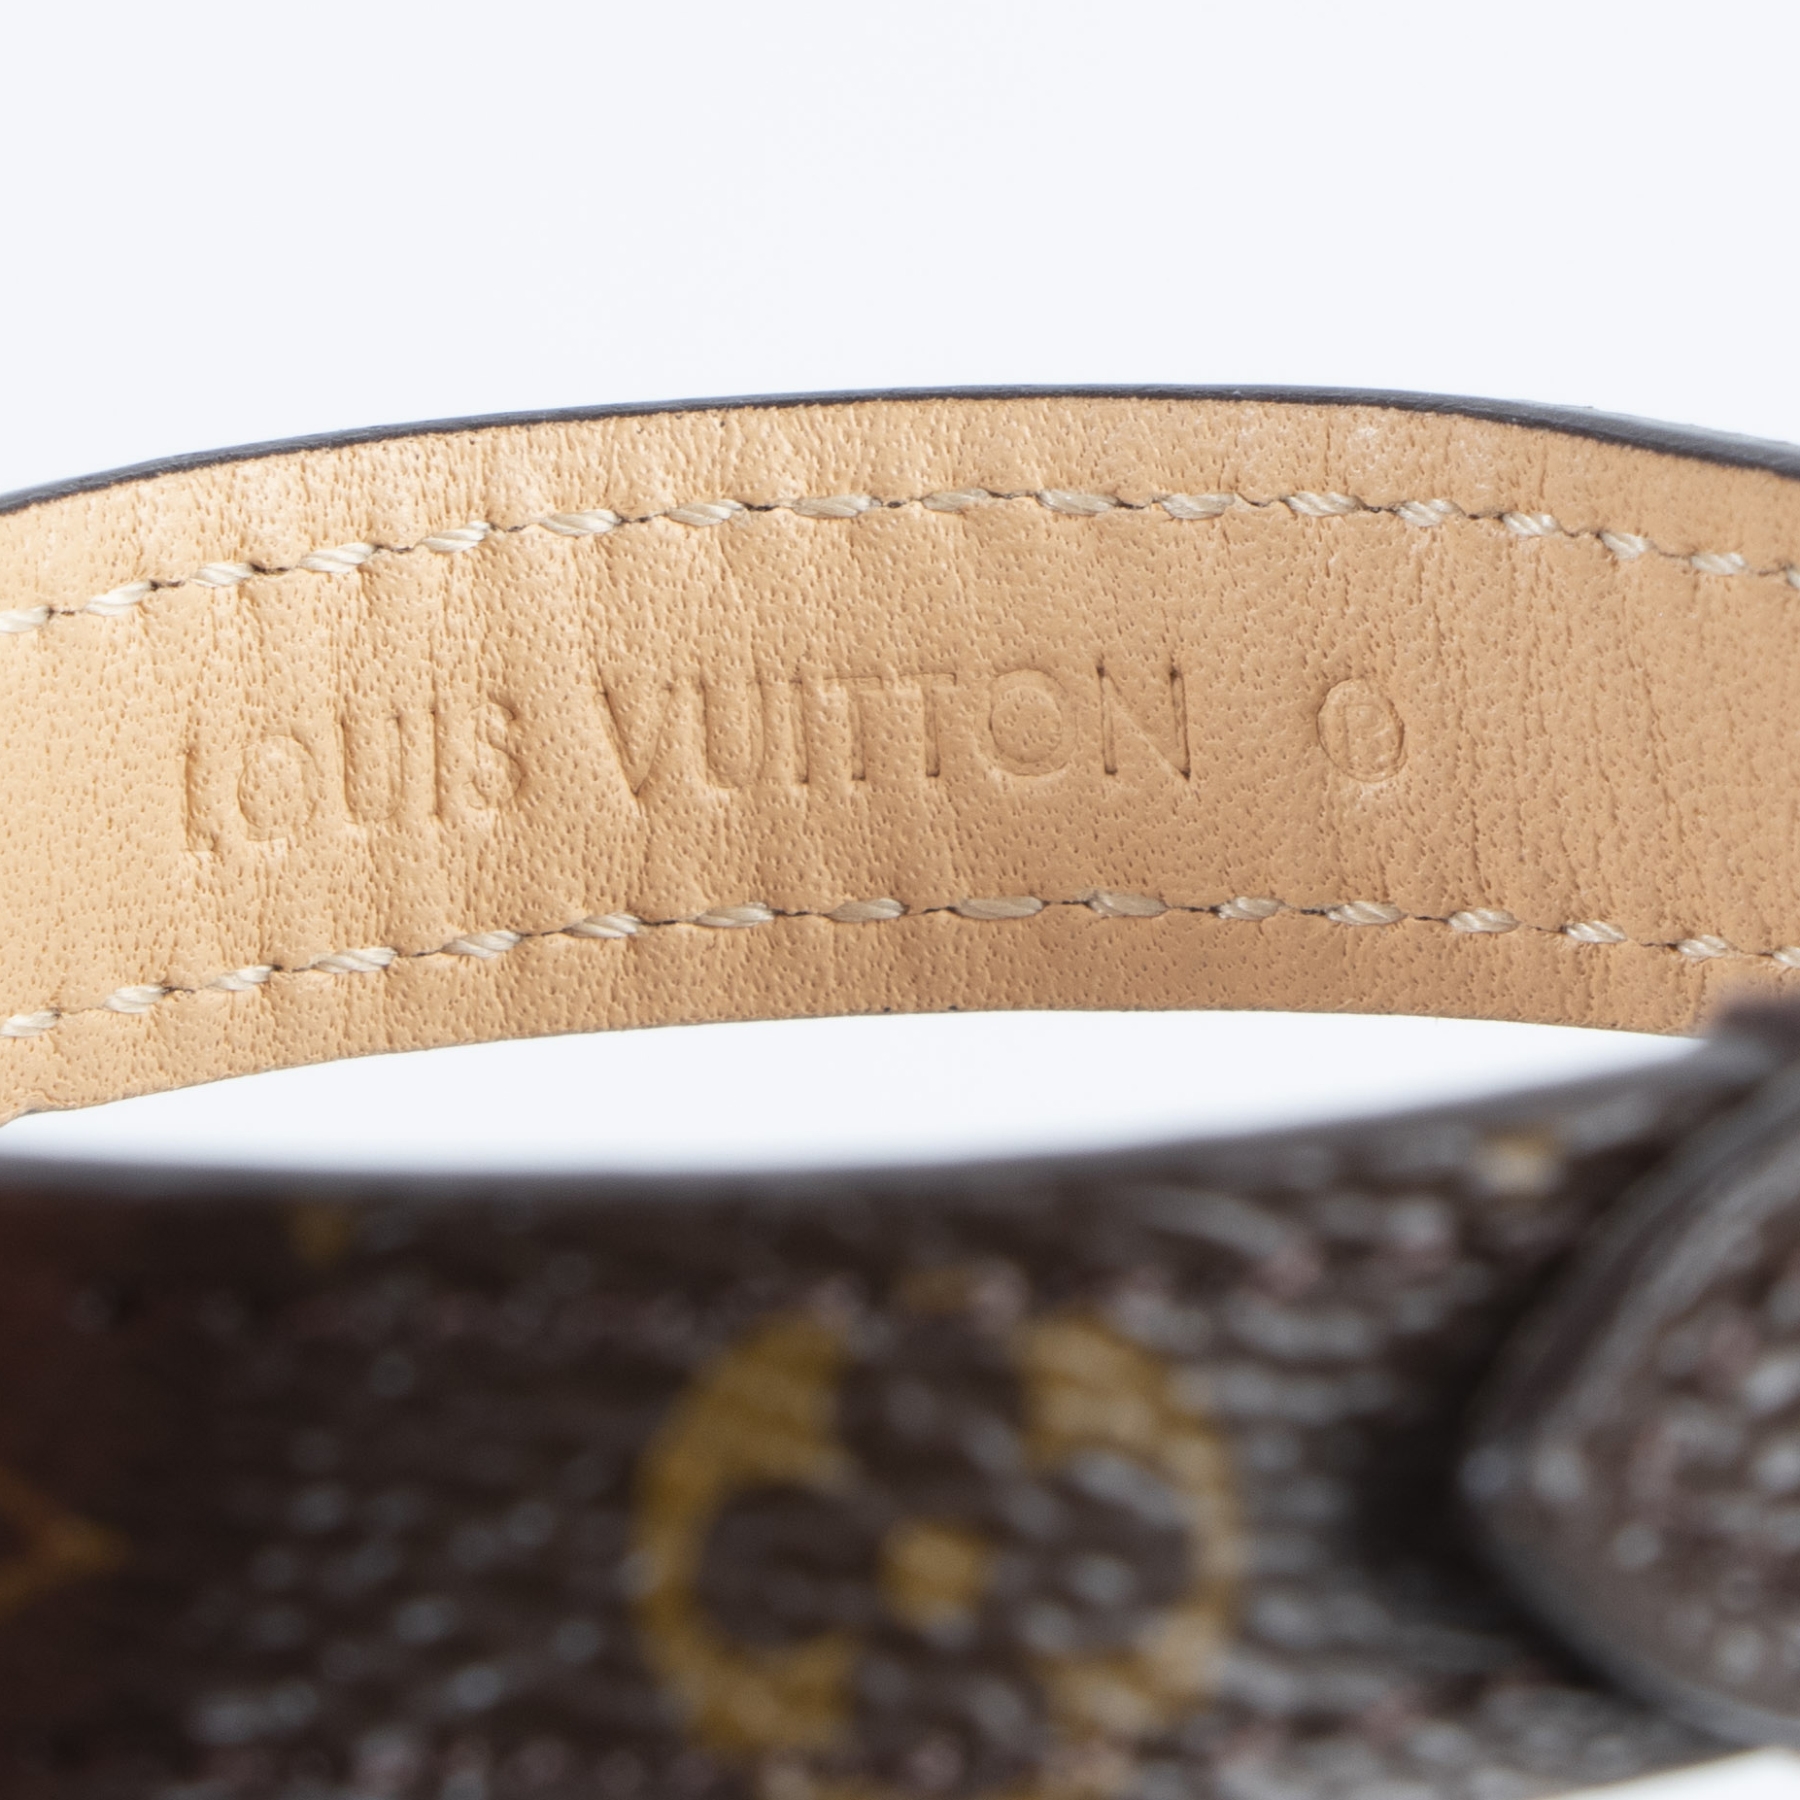 Louis Vuitton Essential V Bracelet Brown Monogram Canvas. Size 17